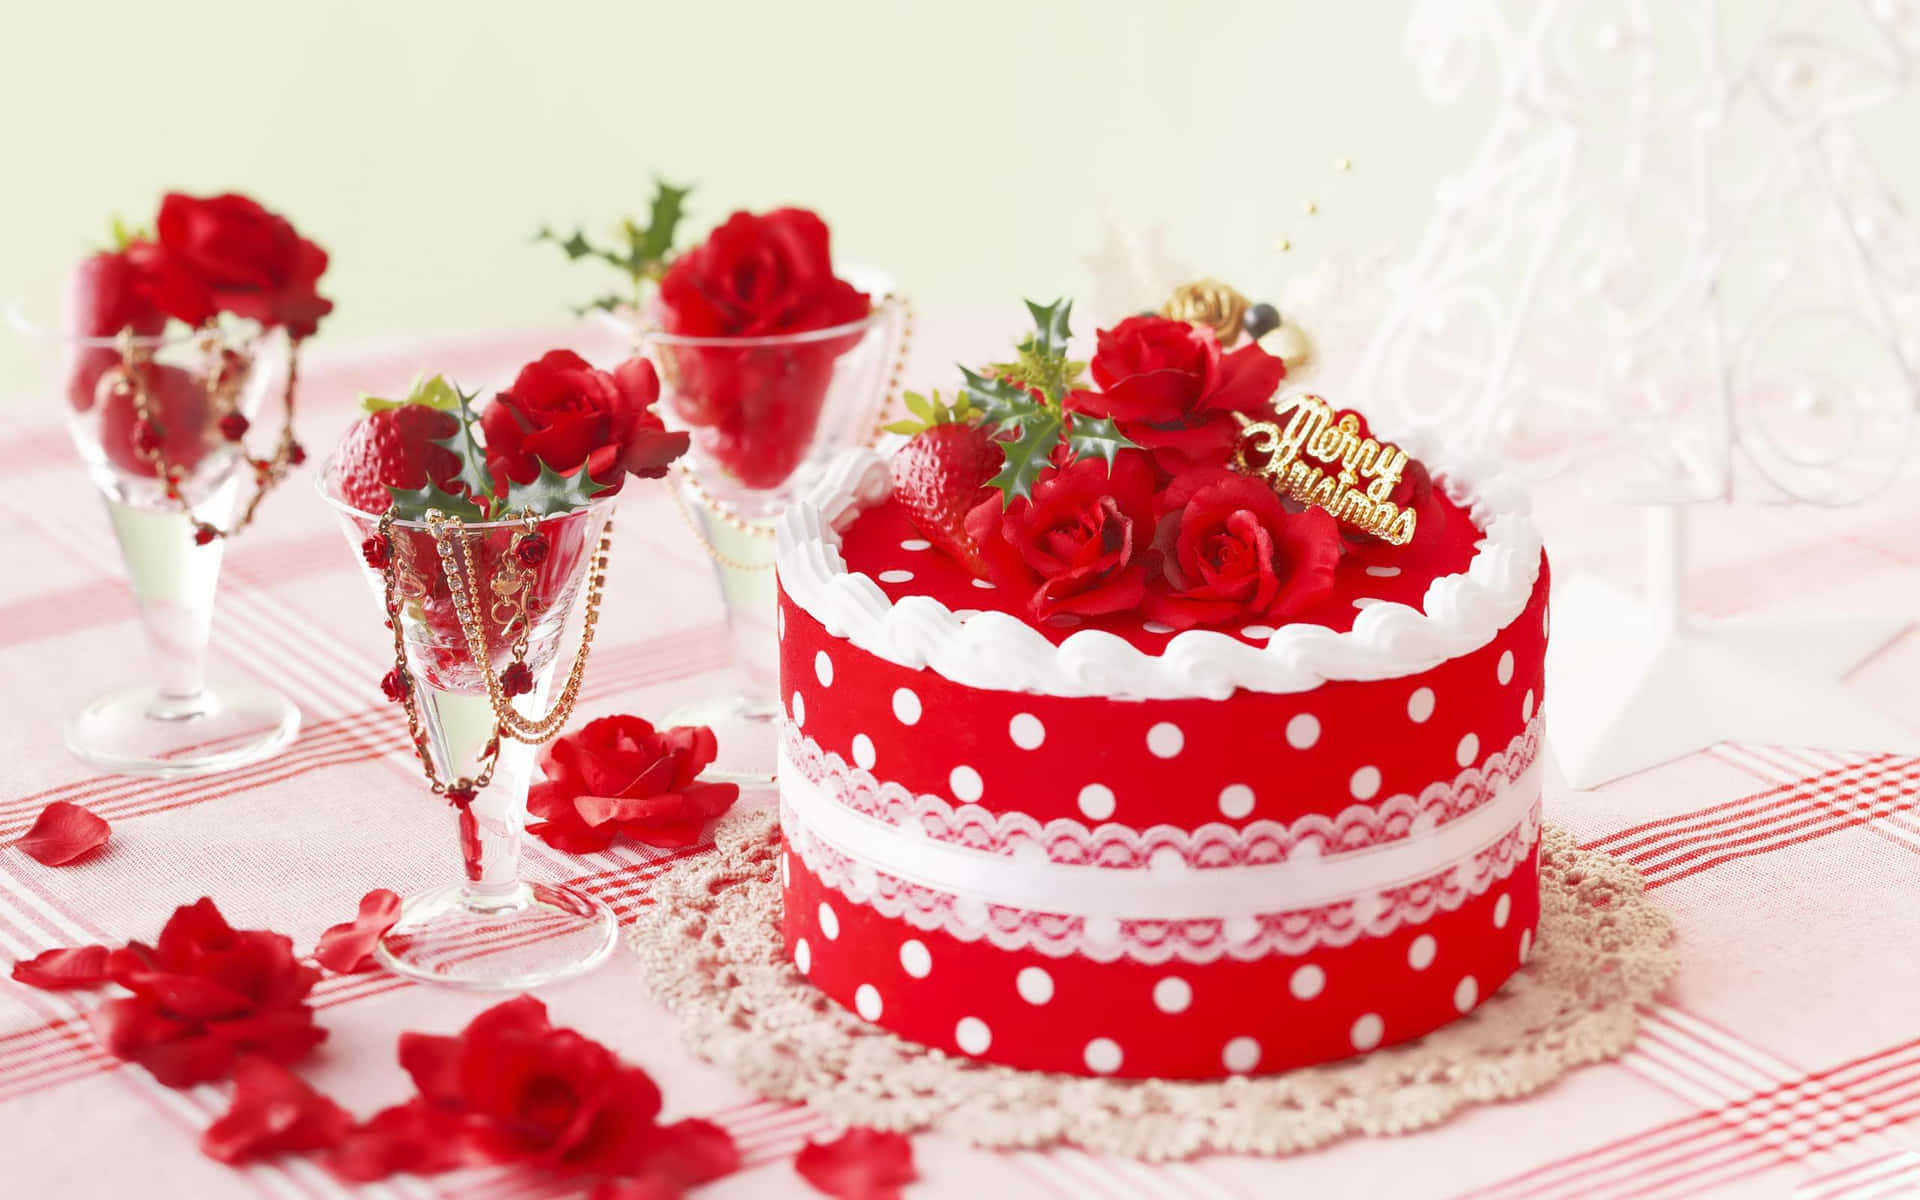 Einroter Kuchen Mit Rosen Darauf